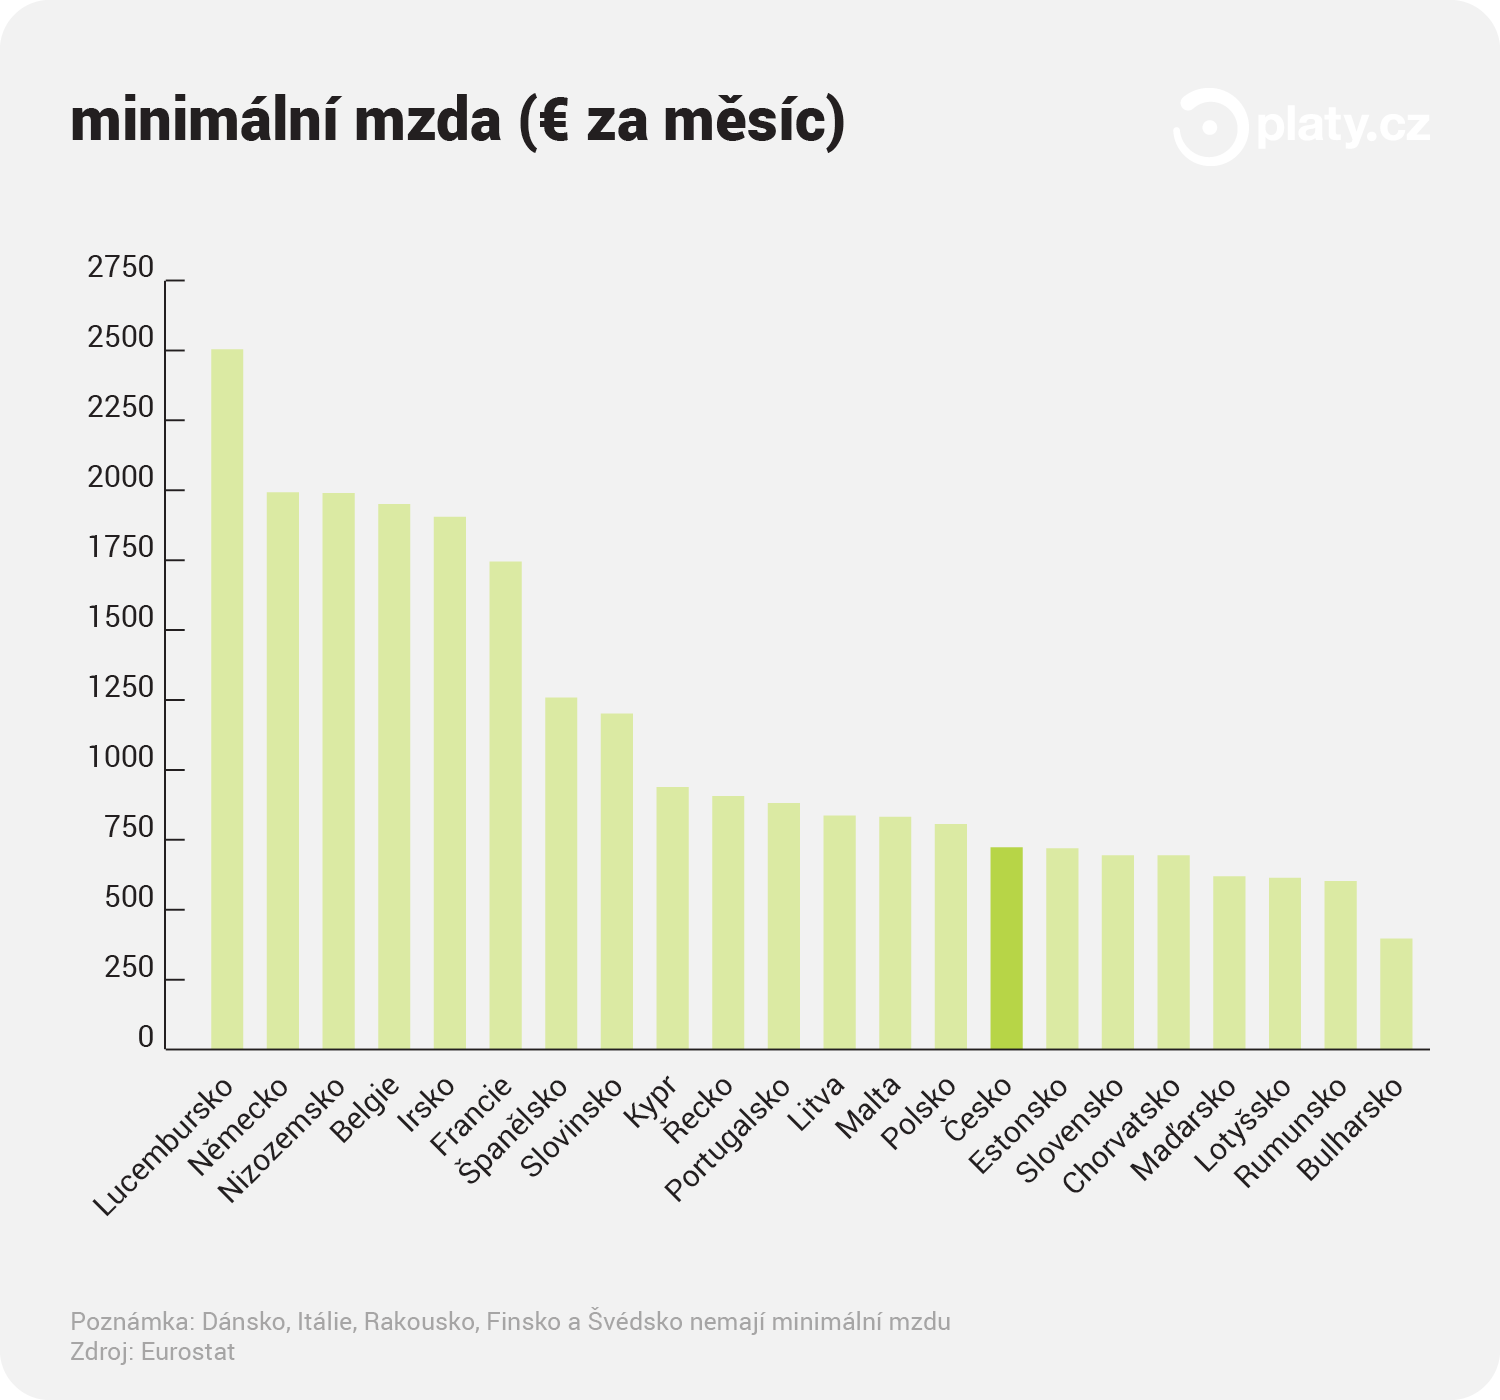 Platy.cz - Minimální mzda v krajinách EU